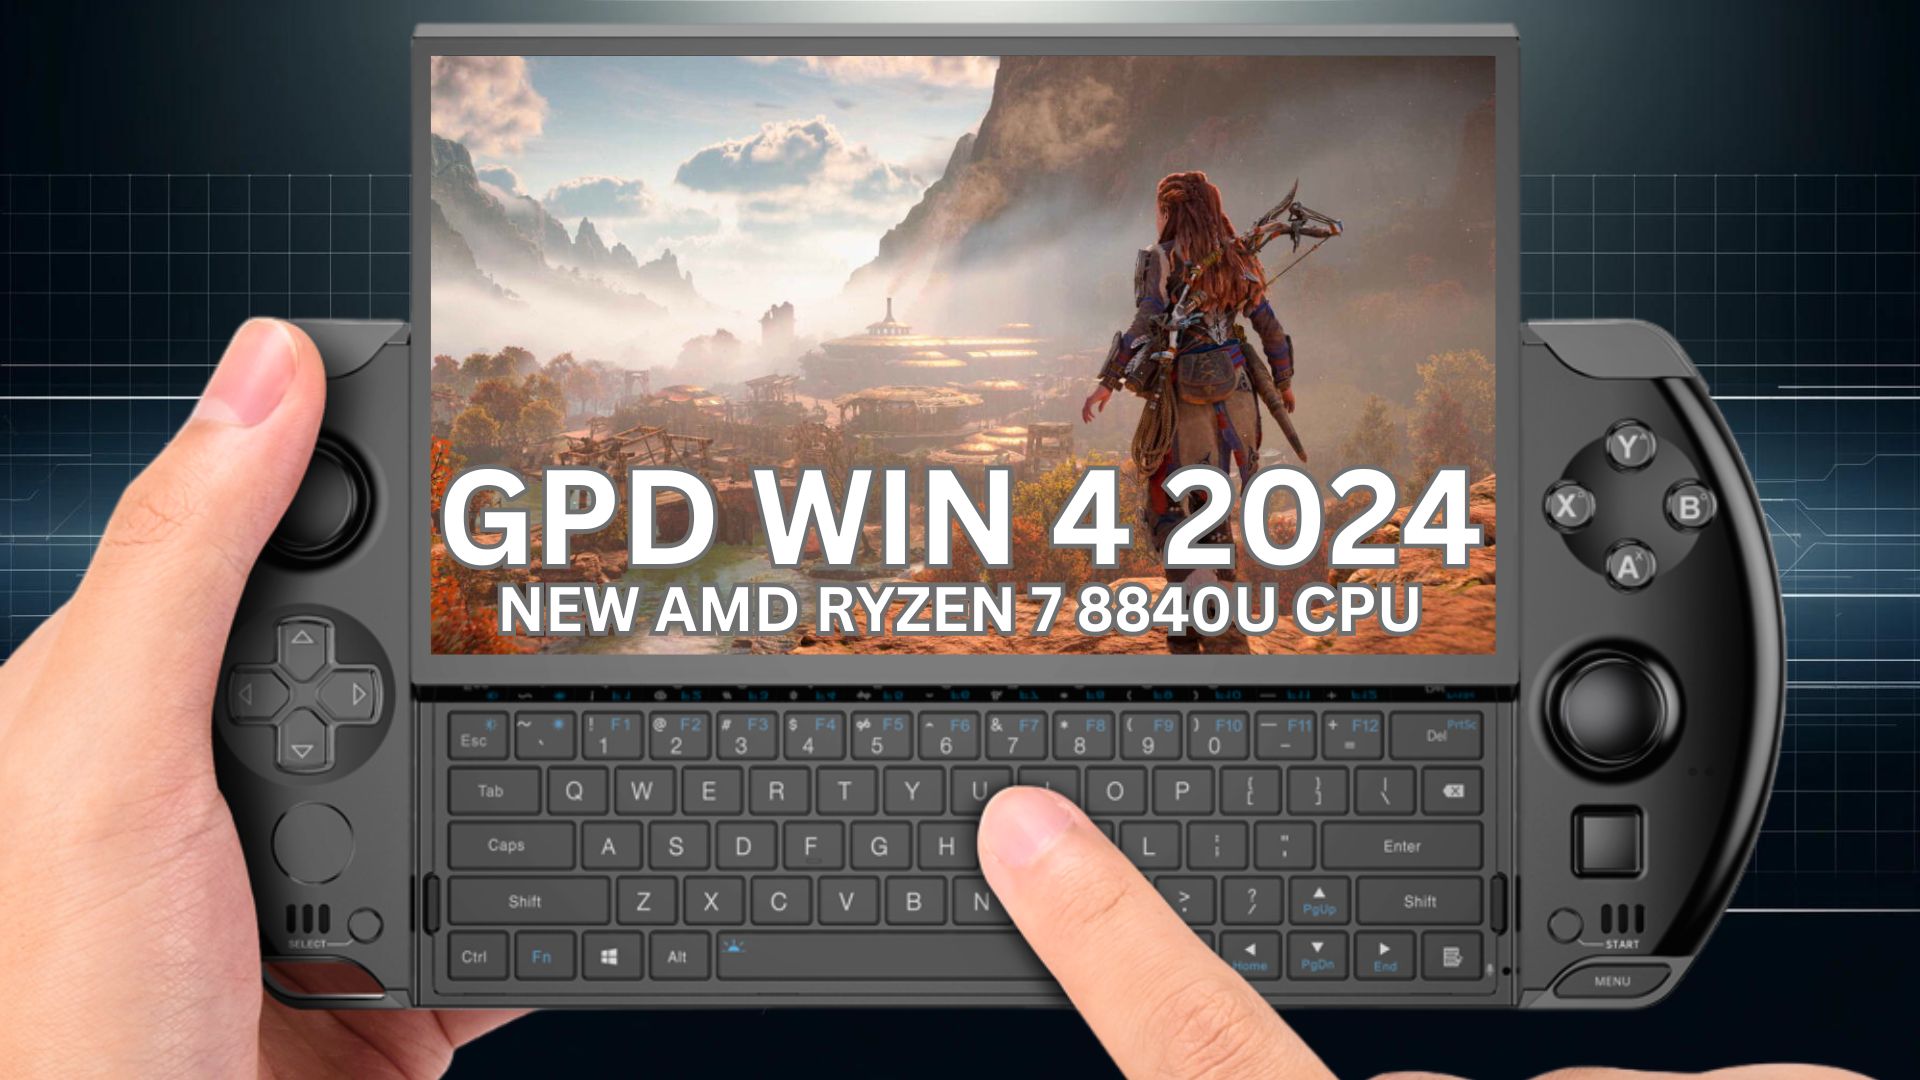 Recenzja GPD WIN 4 2024 z materiałem wideo - przenośny komputer do gier nowej generacji z procesorem Ryzen 7 8840U